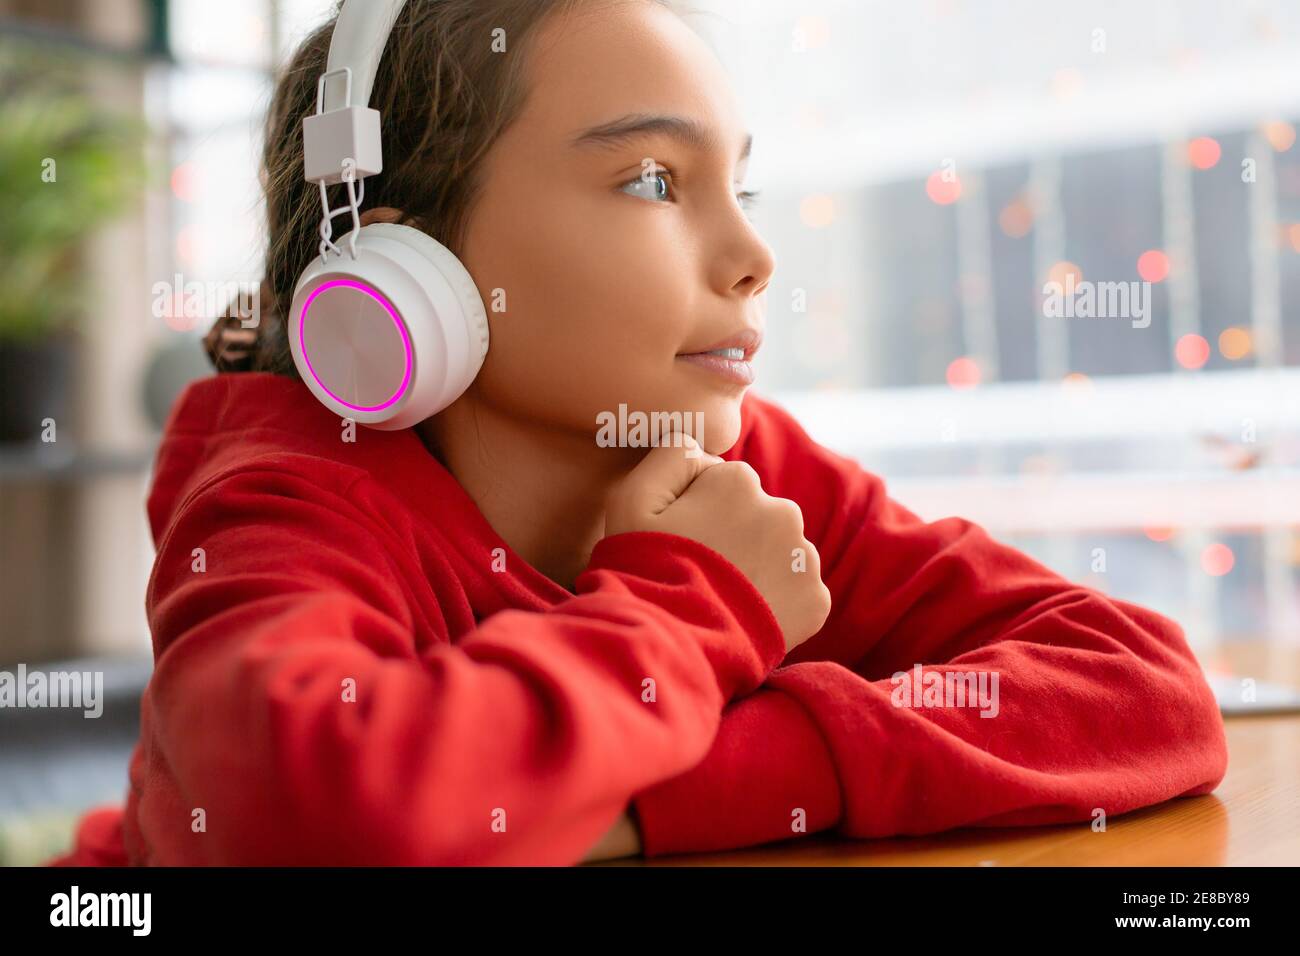 Une adolescente écoute de la musique à l'aide d'un casque. Concept de technologie moderne. Banque D'Images